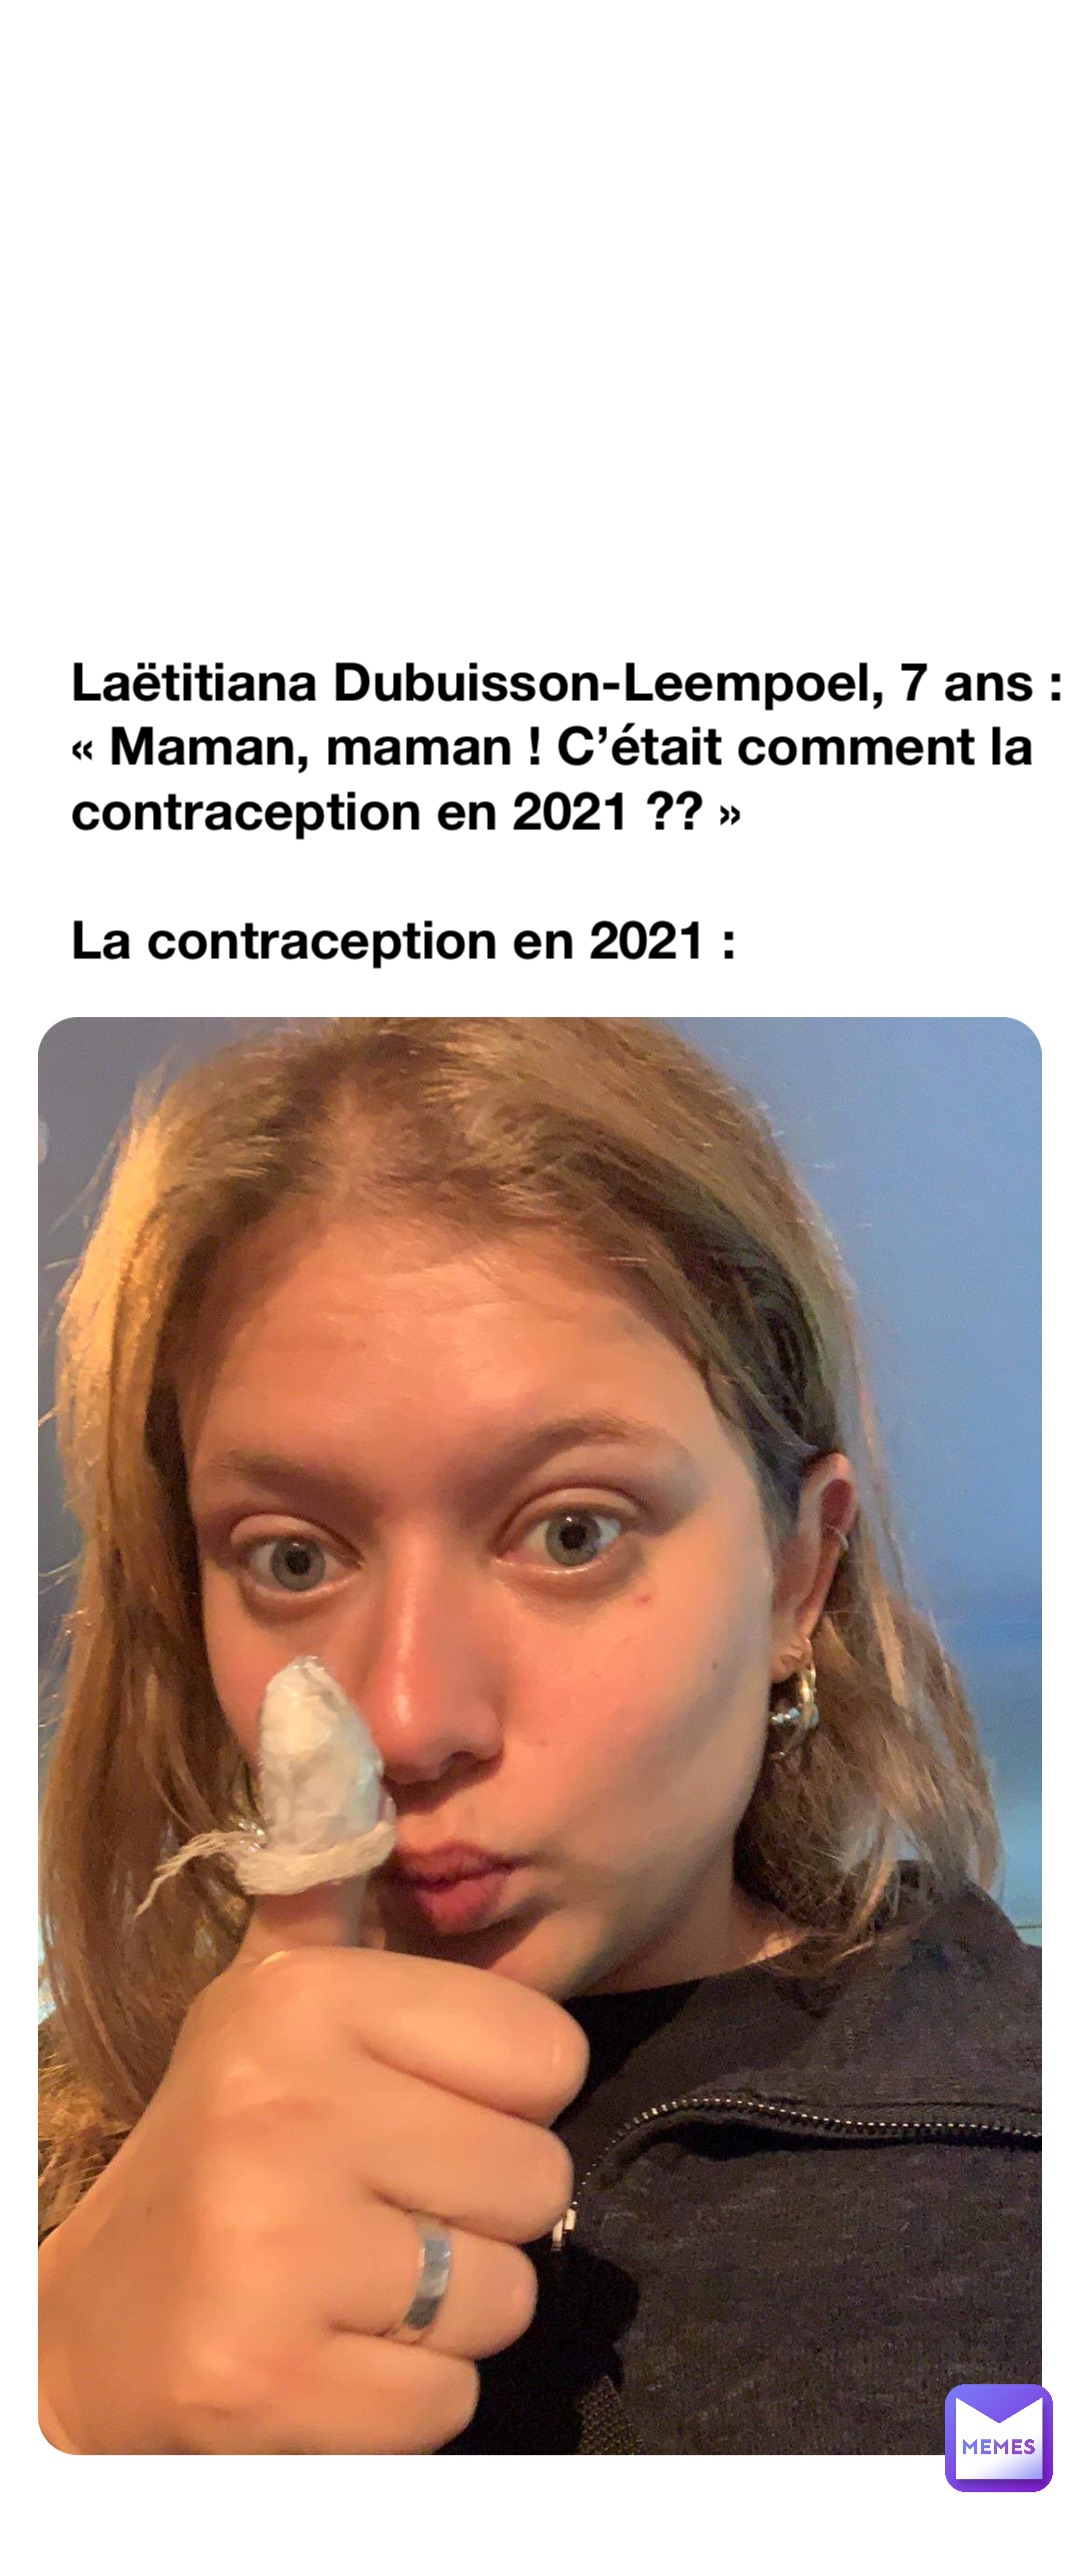 Laëtitiana Dubuisson-Leempoel, 7 ans : 
« Maman, maman ! C’était comment la contraception en 2021 ?? »

La contraception en 2021 :